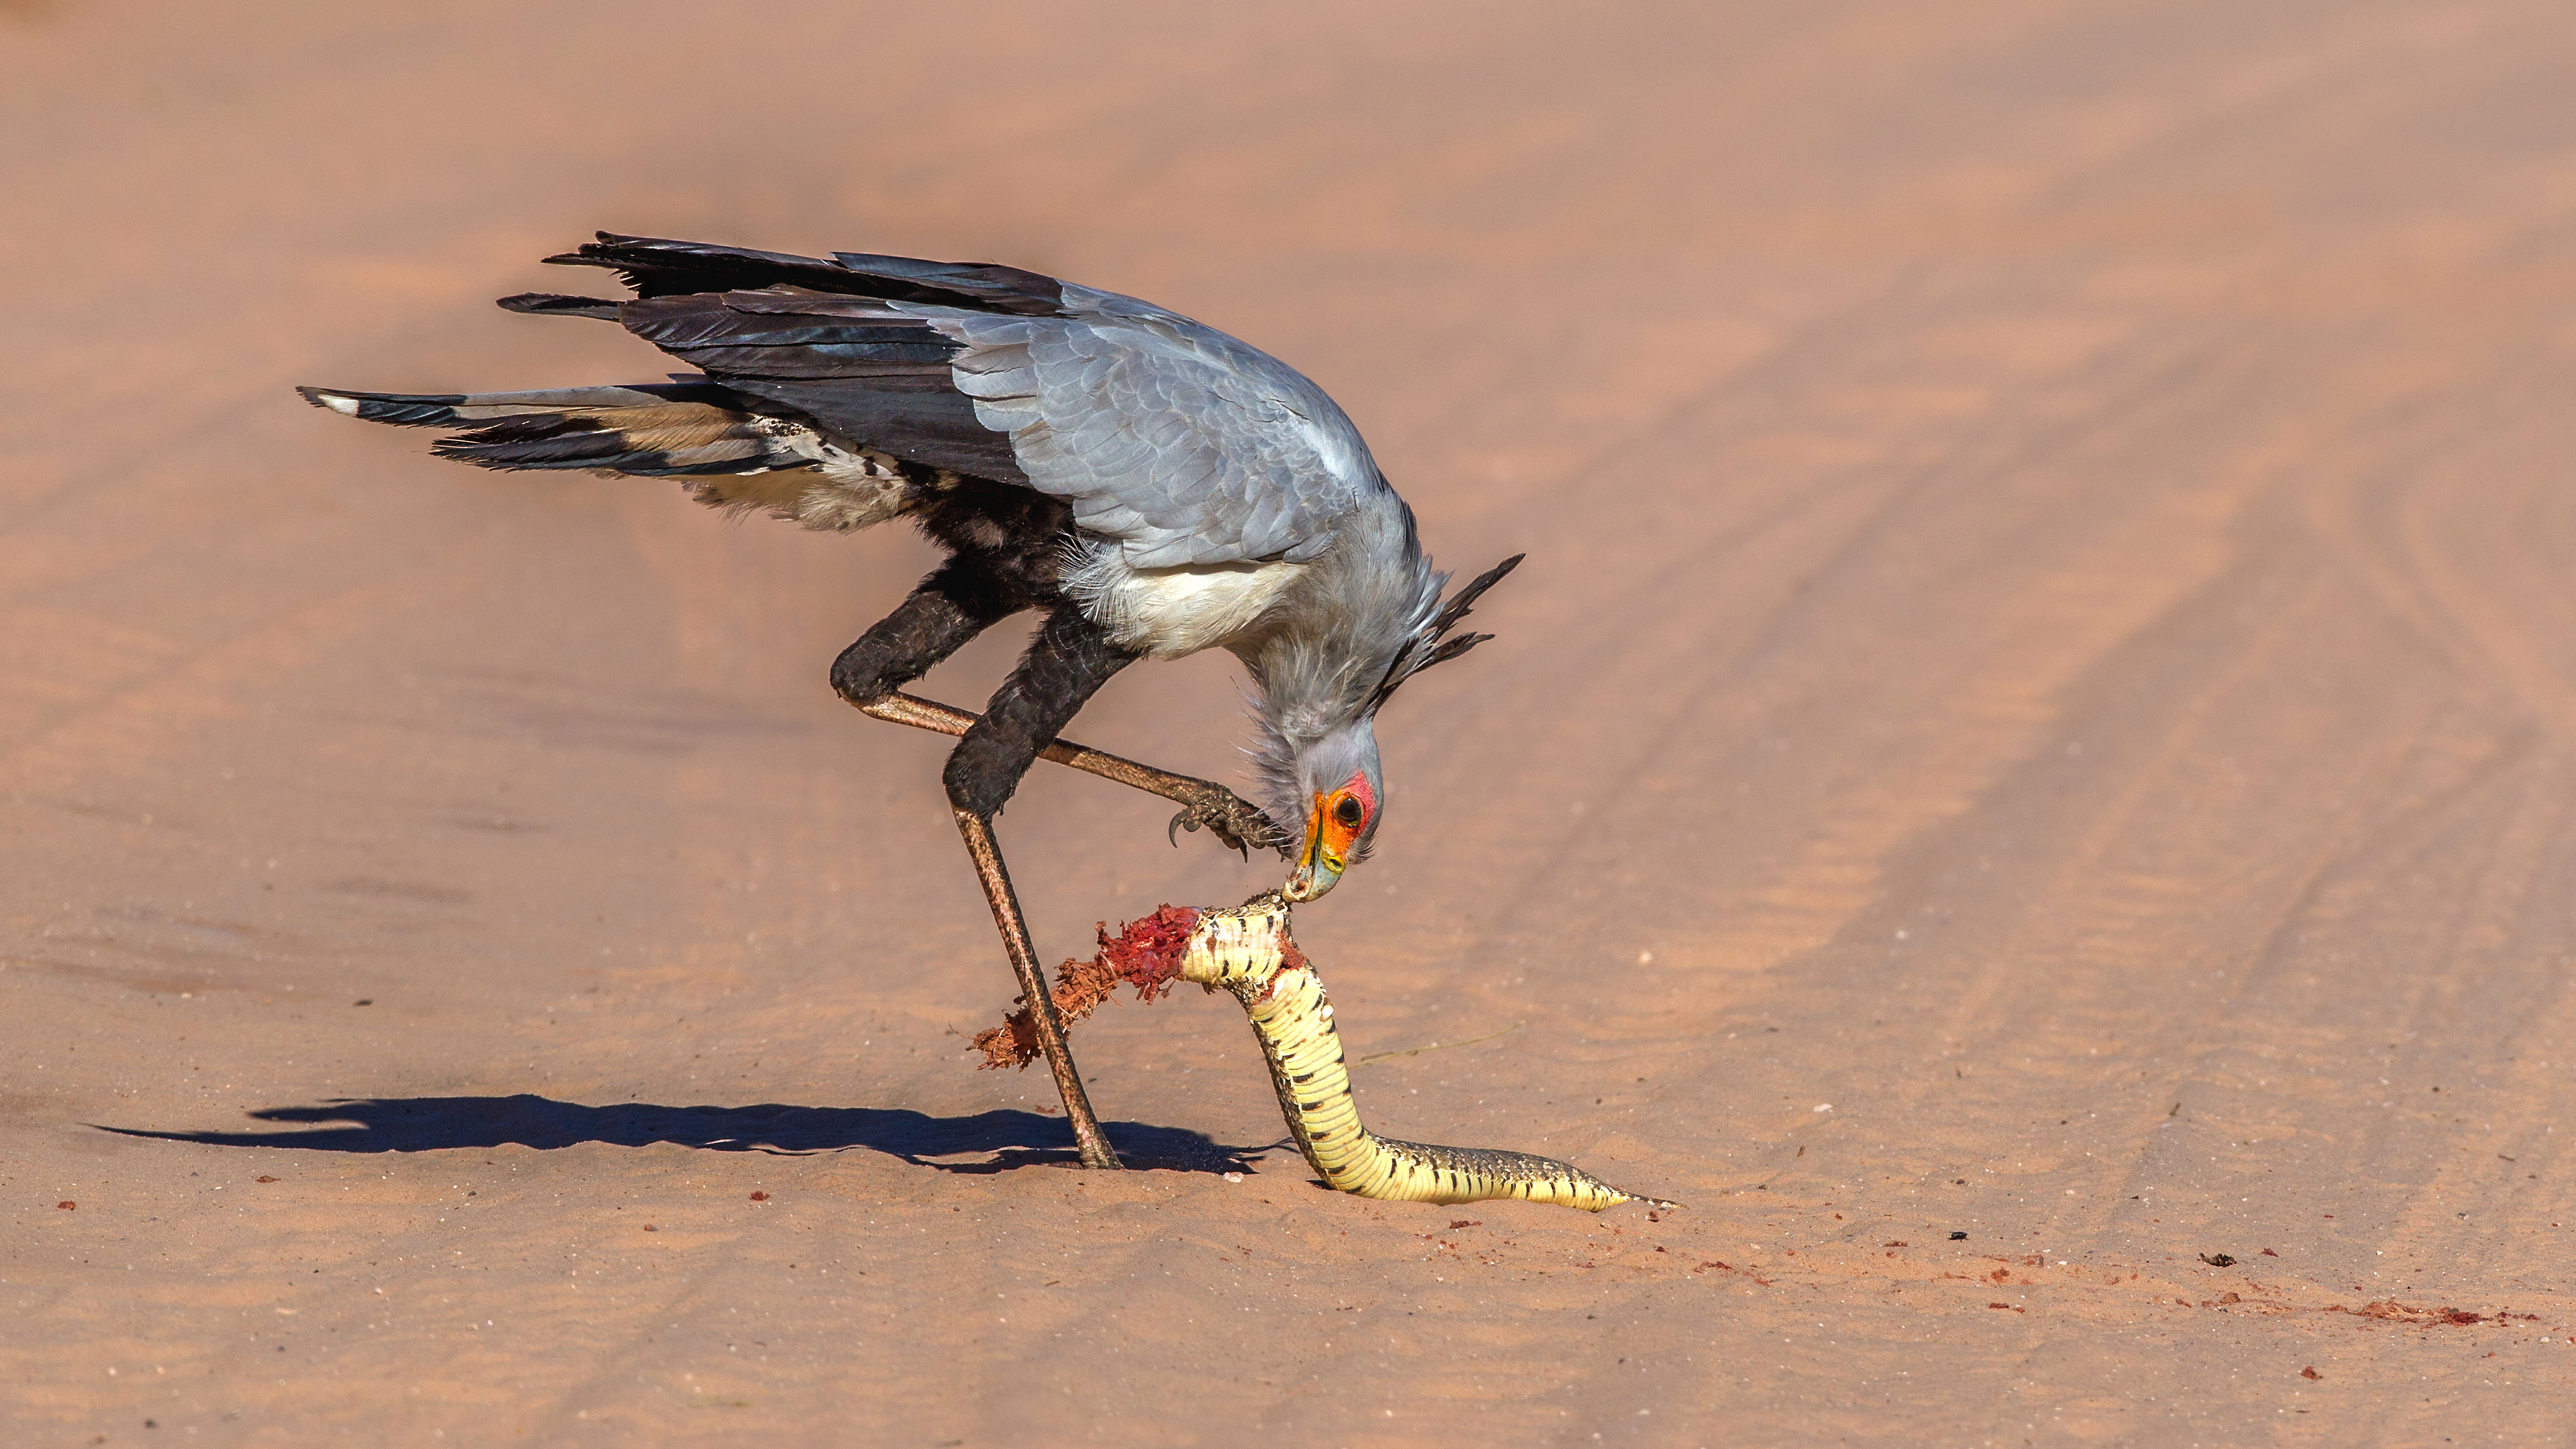 A secretary bird eating a puff adder snake